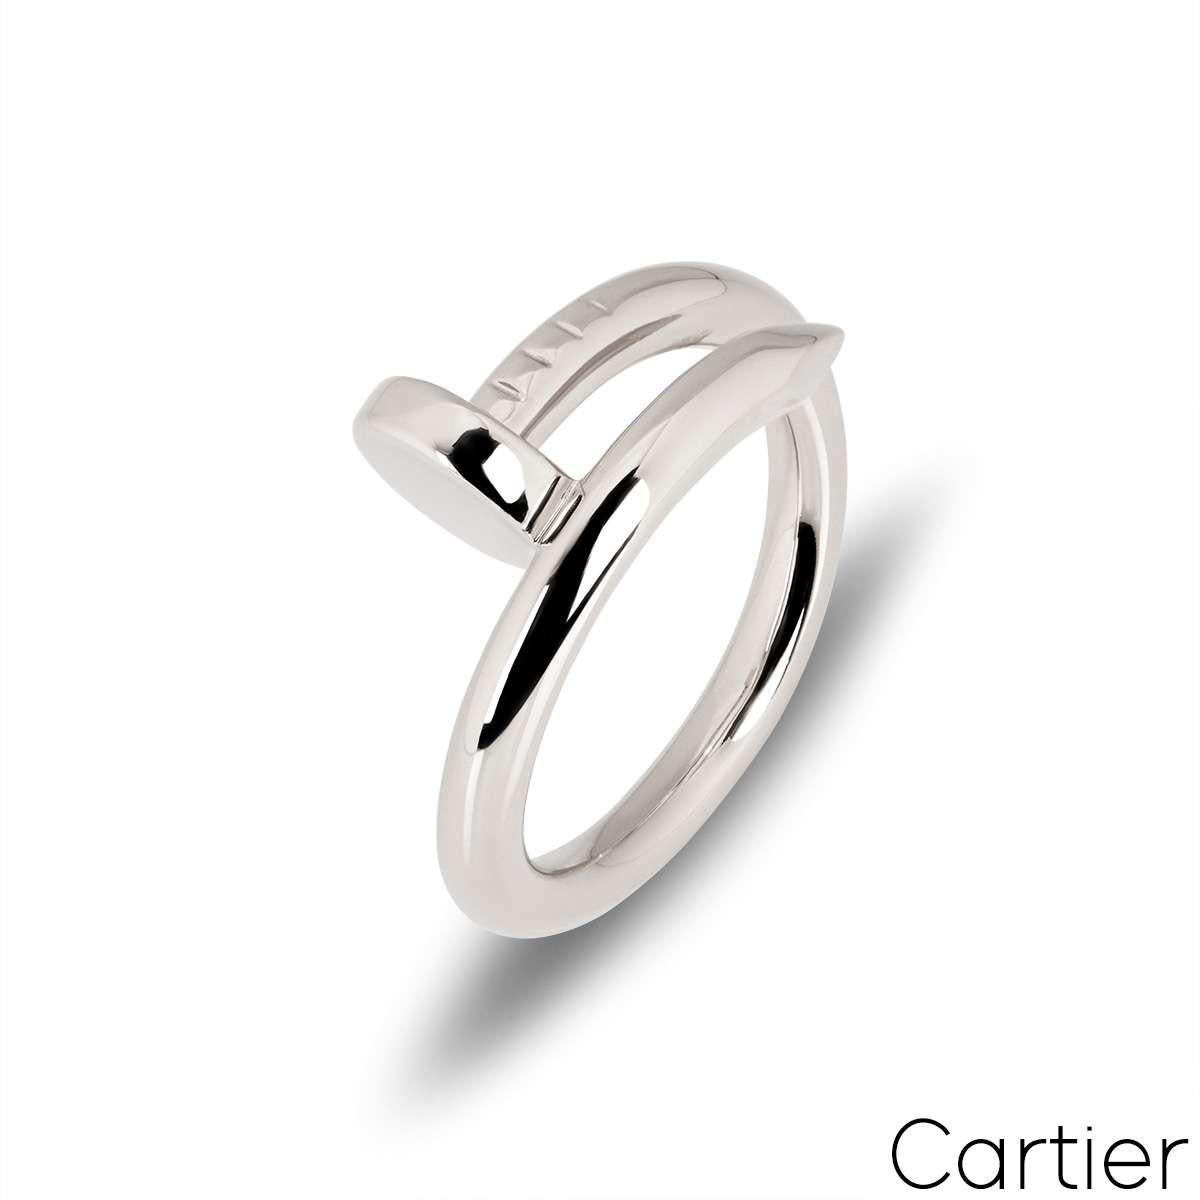 Ein Ring Juste un Clou aus 18 Karat Weißgold von Cartier. Der Ring ist mit einem Nagelkopf an der einen Spitze und einem Nagelende an der anderen Spitze umwickelt. Der Ring hat die Größe UK K½ - EU 50 und ein Bruttogewicht von 7,96 Gramm.

Kommt